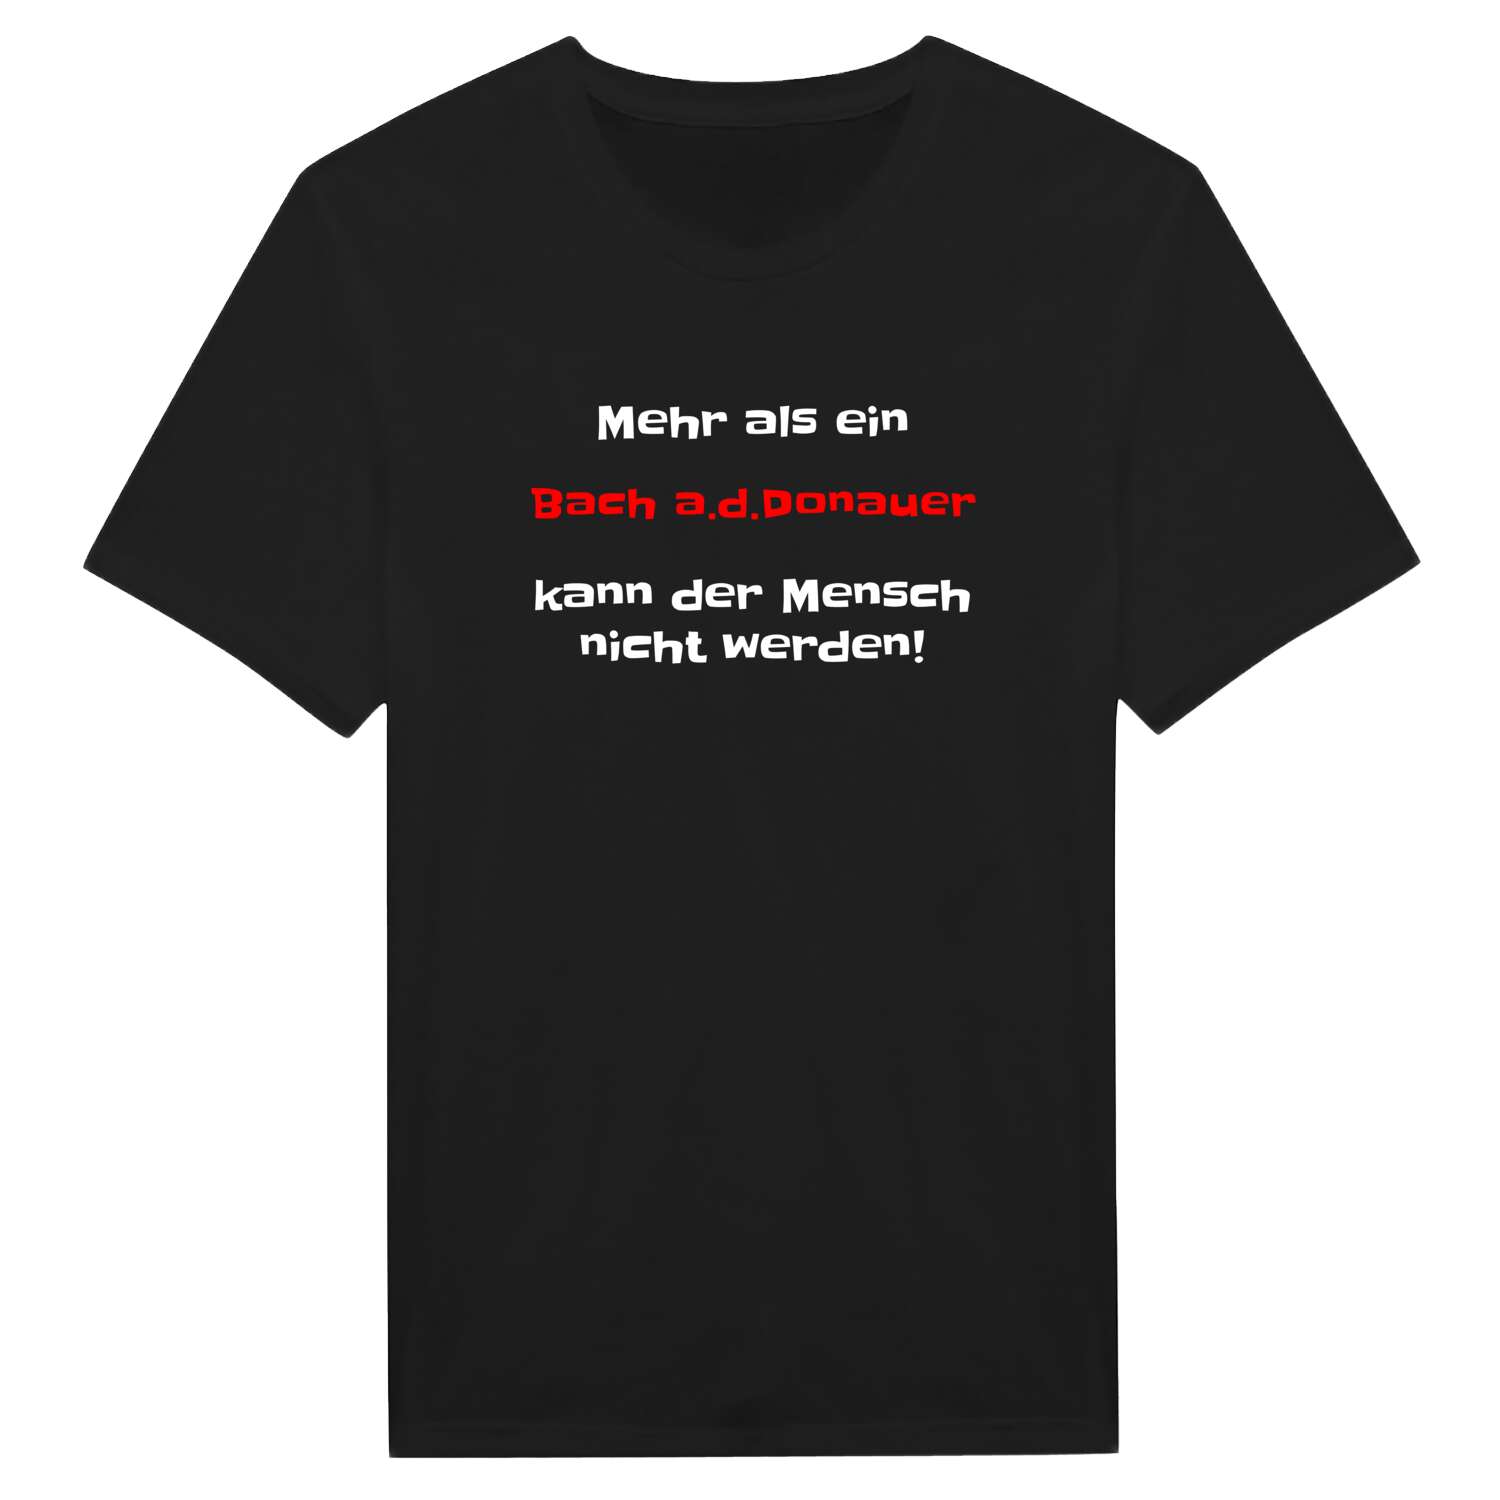 Bach a.d.Donau T-Shirt »Mehr als ein«